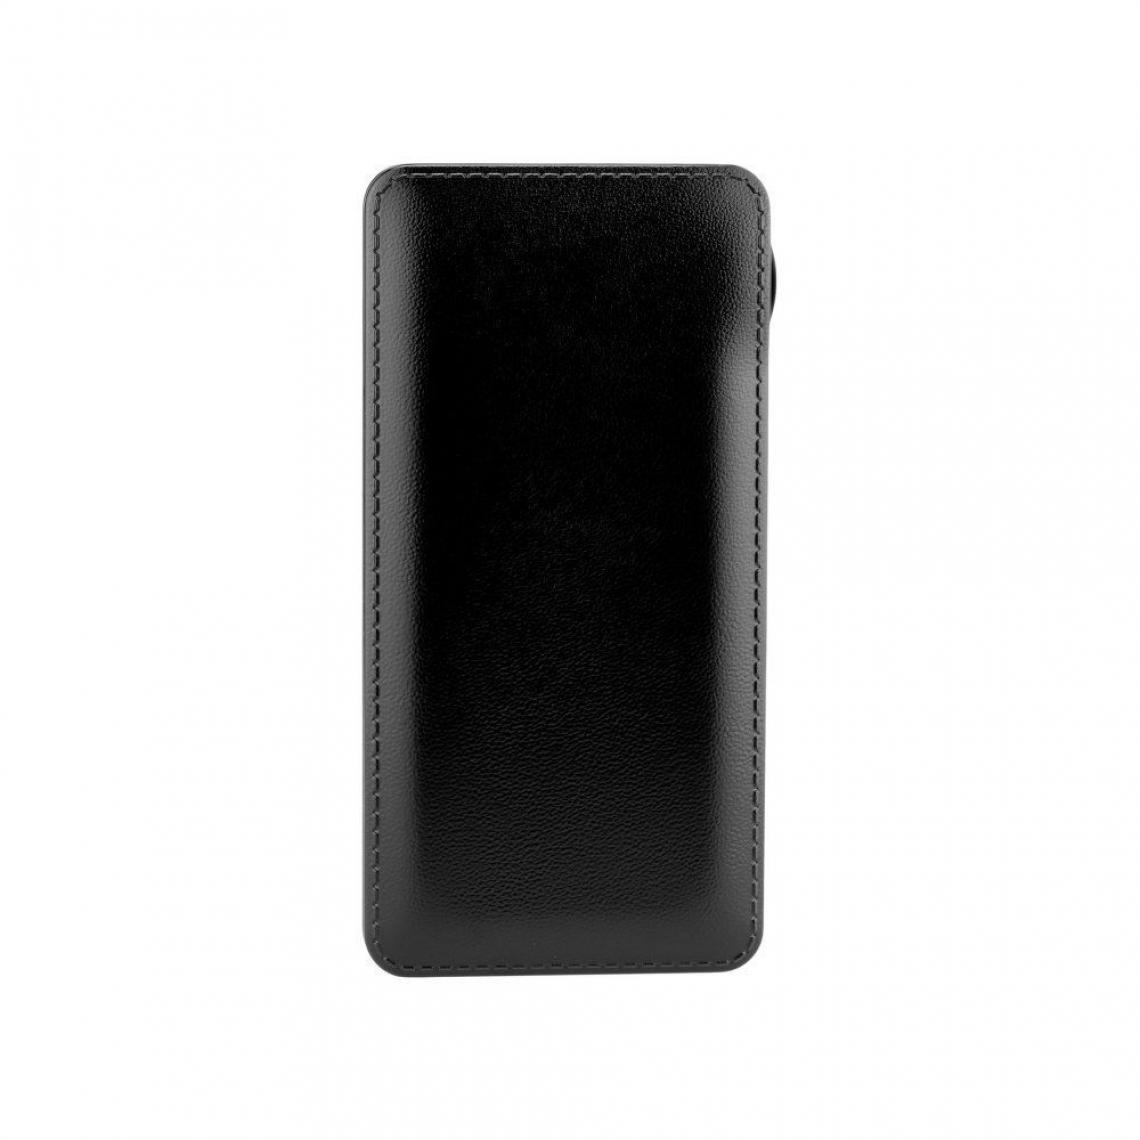 Ozzzo - Chargeur batterie externe 30000 mAh powerbank ozzzo noir pour Samsung Galaxy A20e - Autres accessoires smartphone